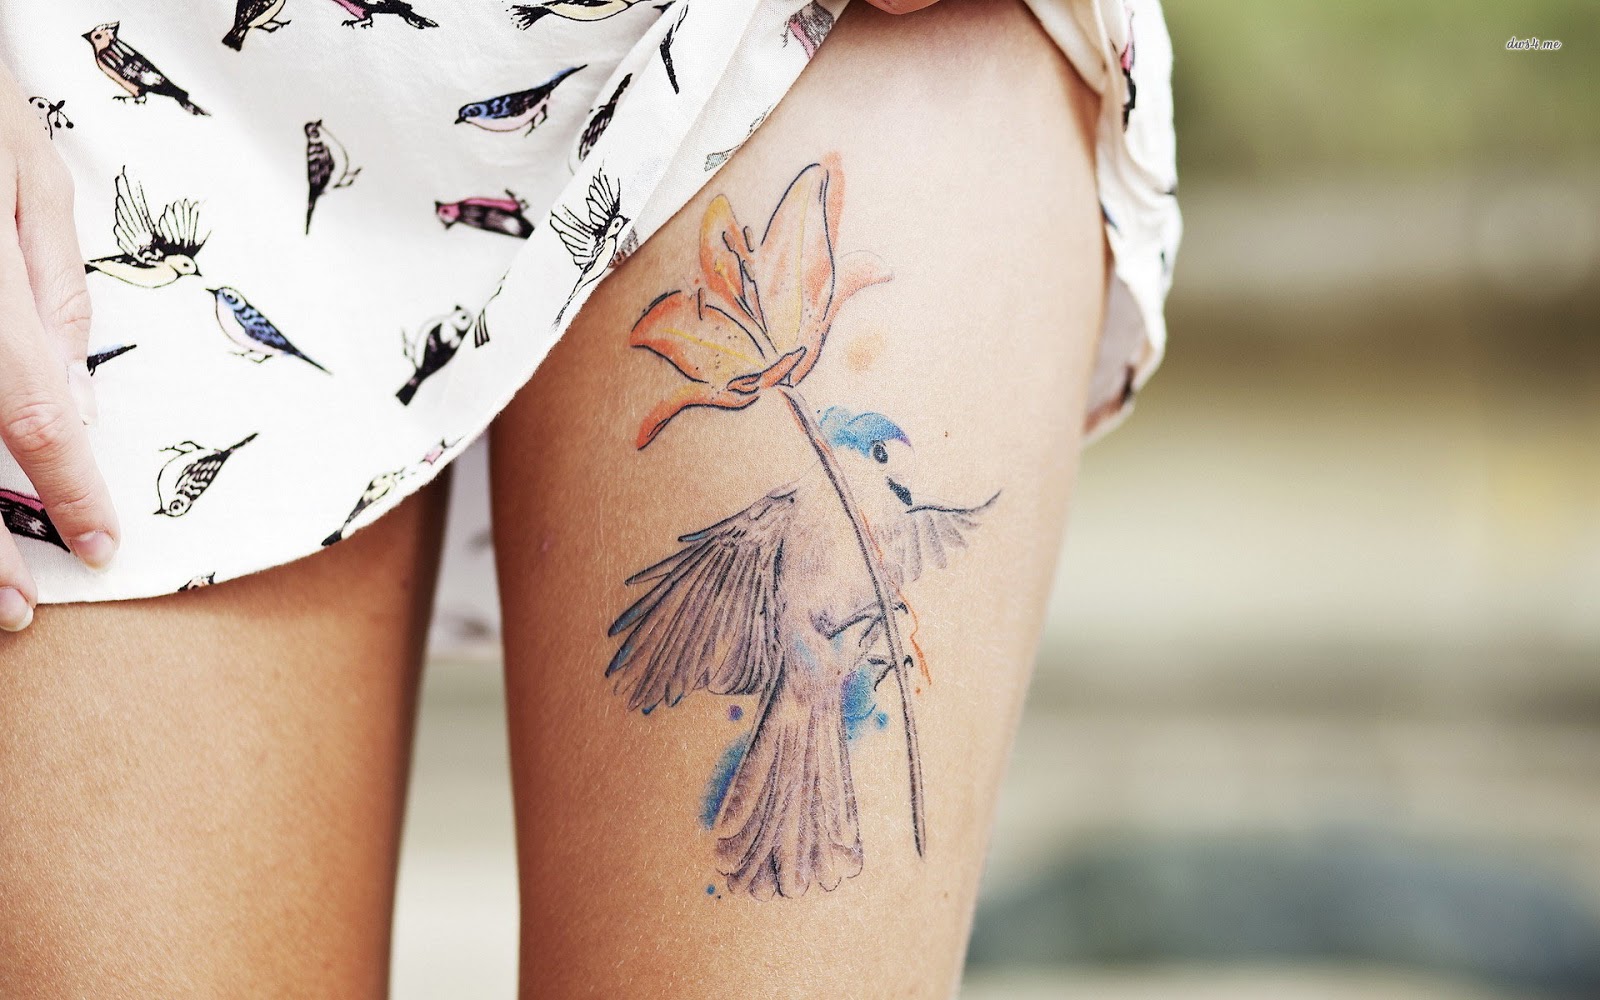 chica nos enseña su tatuaje en la parte superior del muslo de un colibri y ina amapola